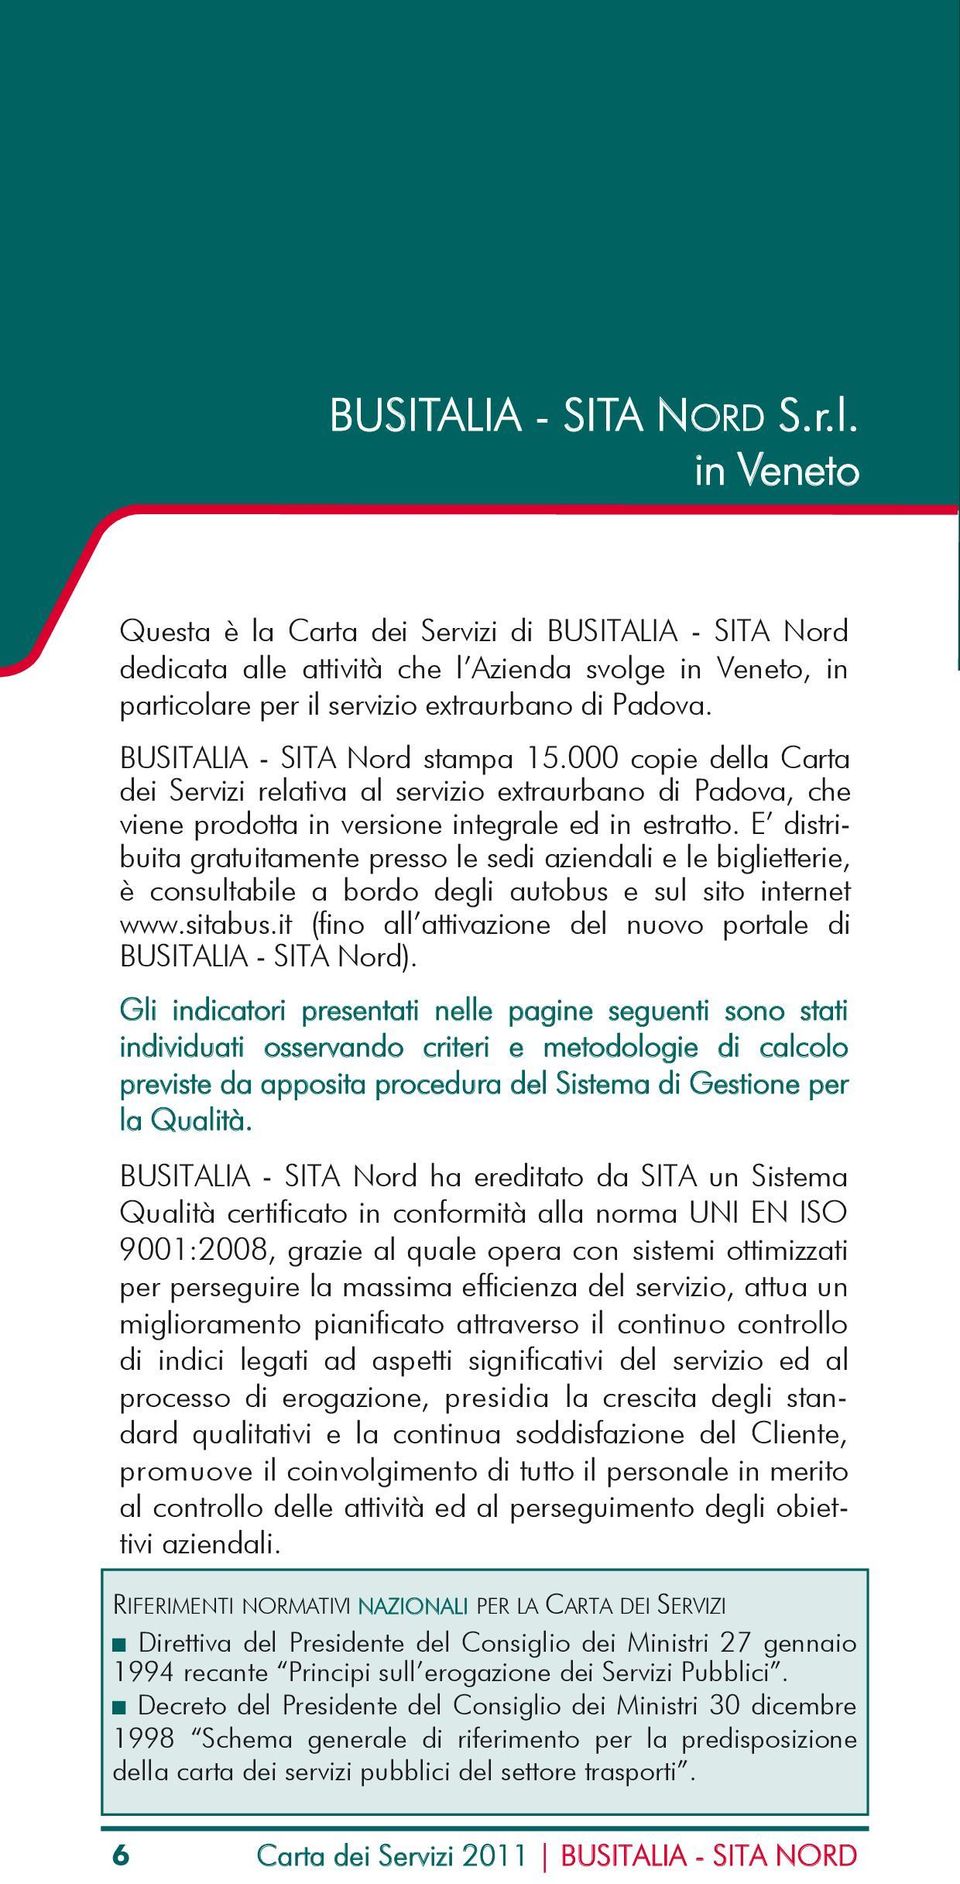 BUSITALIA - SITA Nord stampa 15.000 copie della Carta dei Servizi relativa al servizio extraurbano di Padova, che viene prodotta in versione integrale ed in estratto.